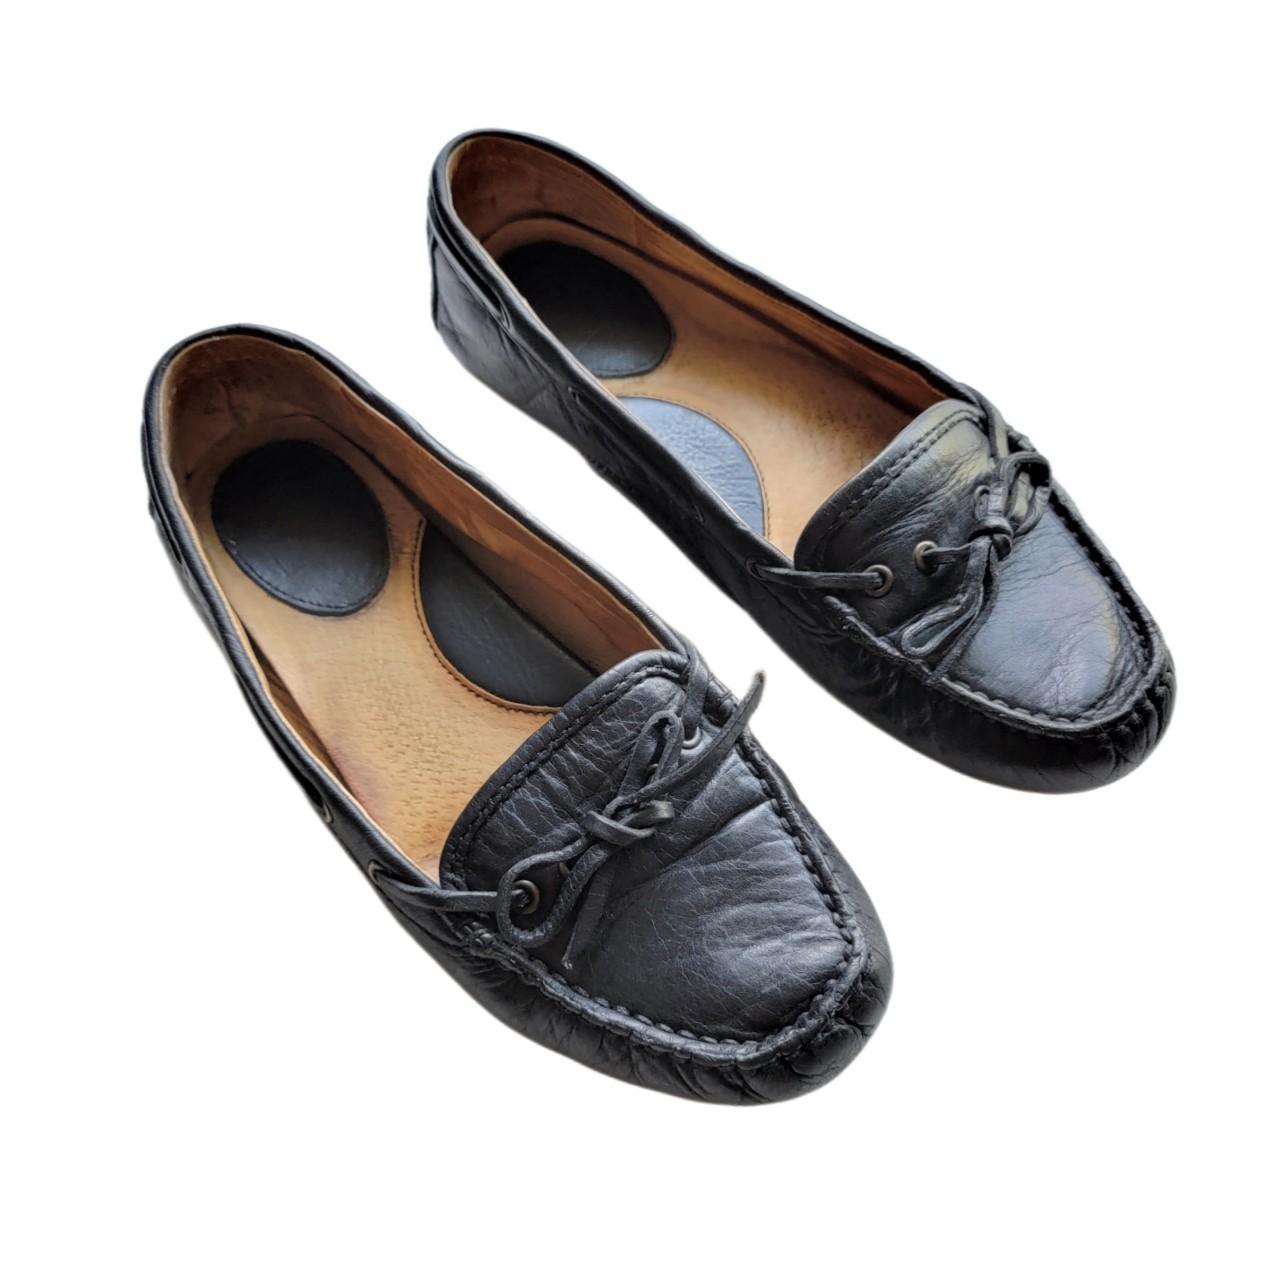 Frye Women's Black Boat-shoes